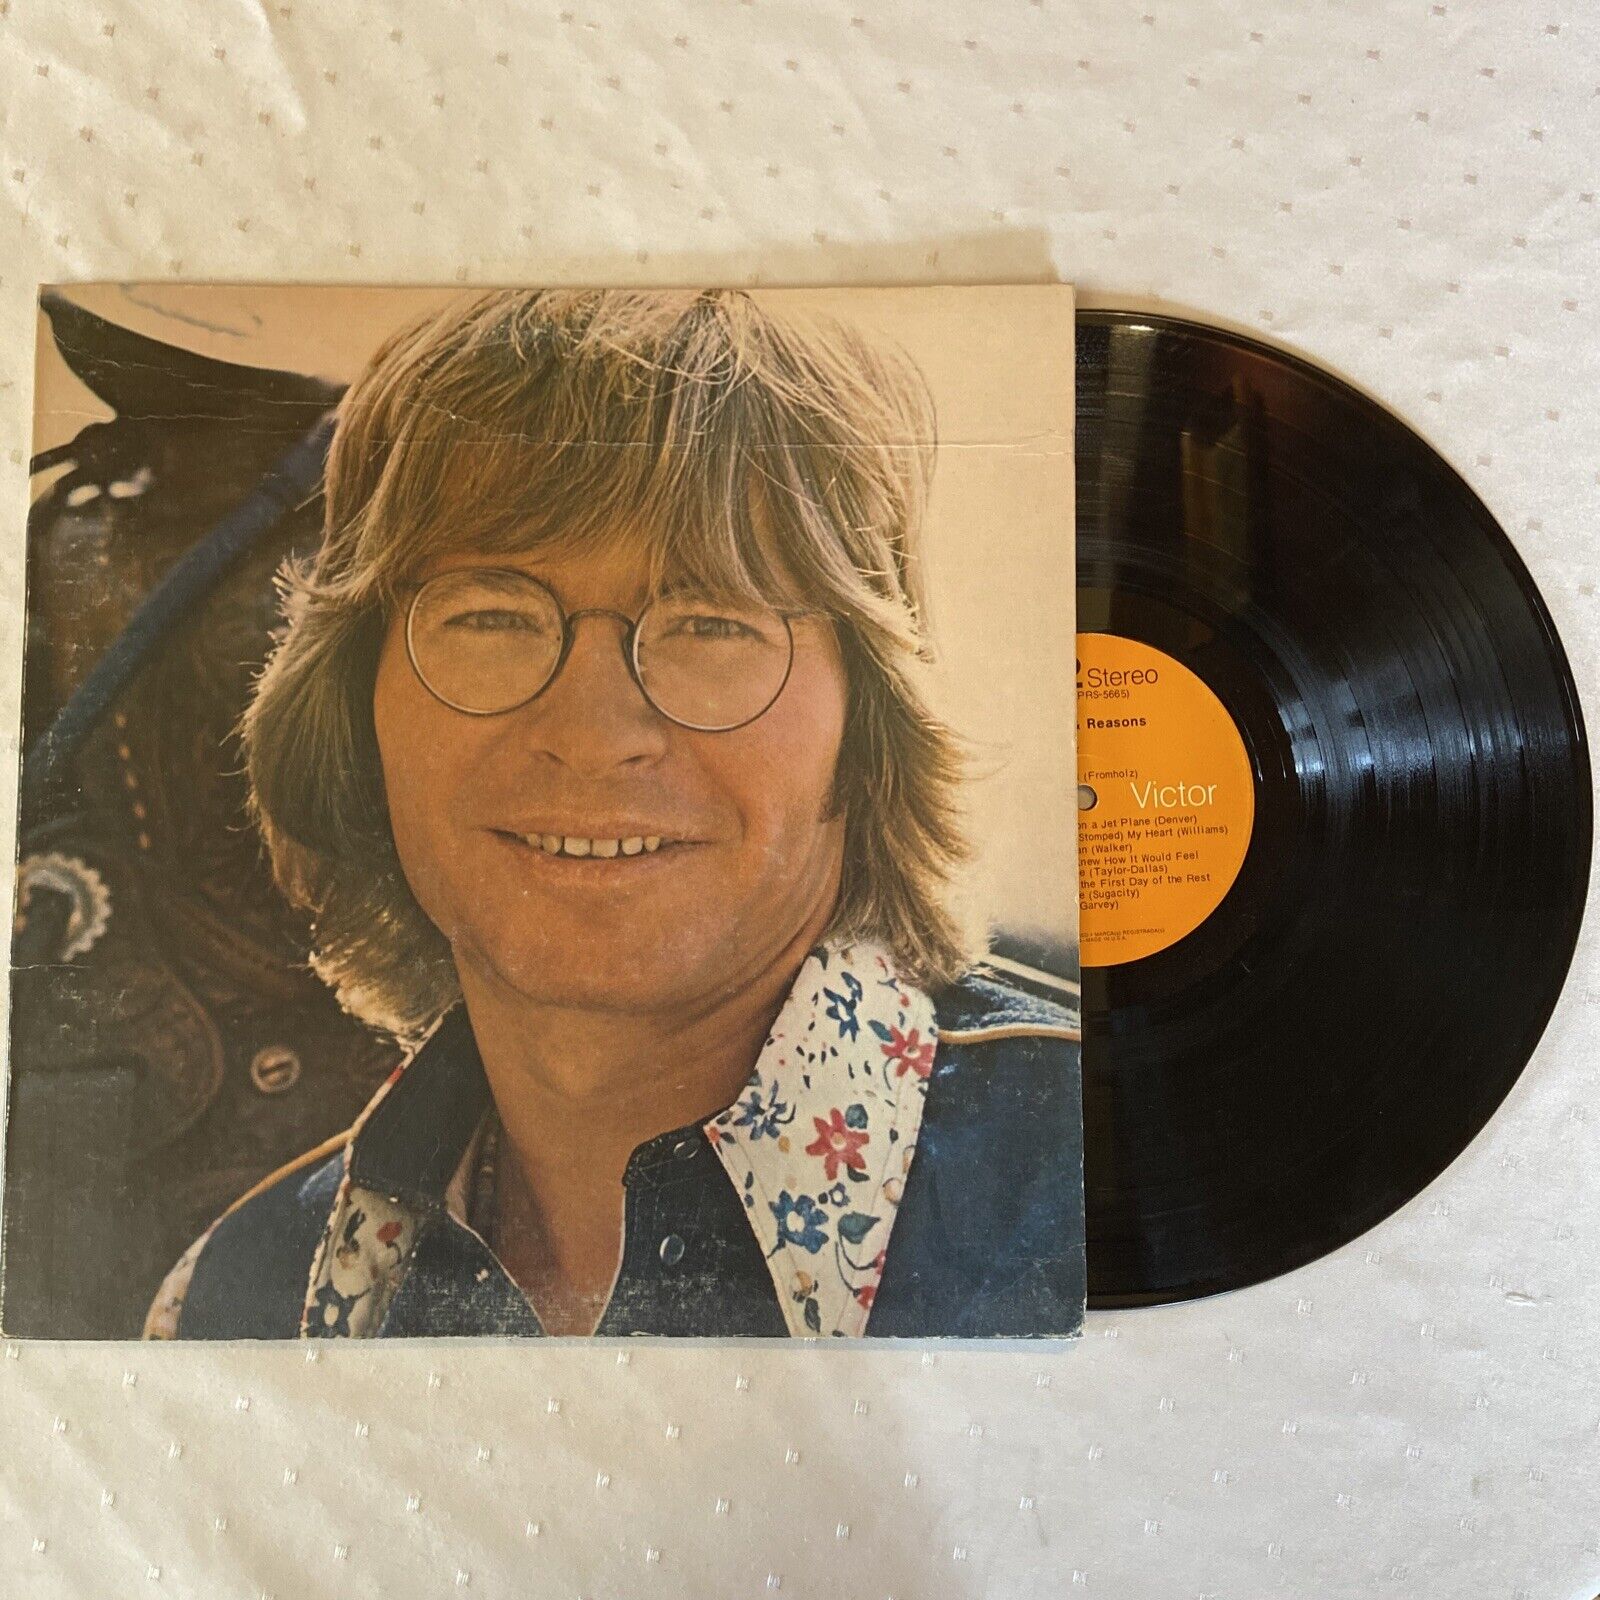 John Denver Windsong album record vintage